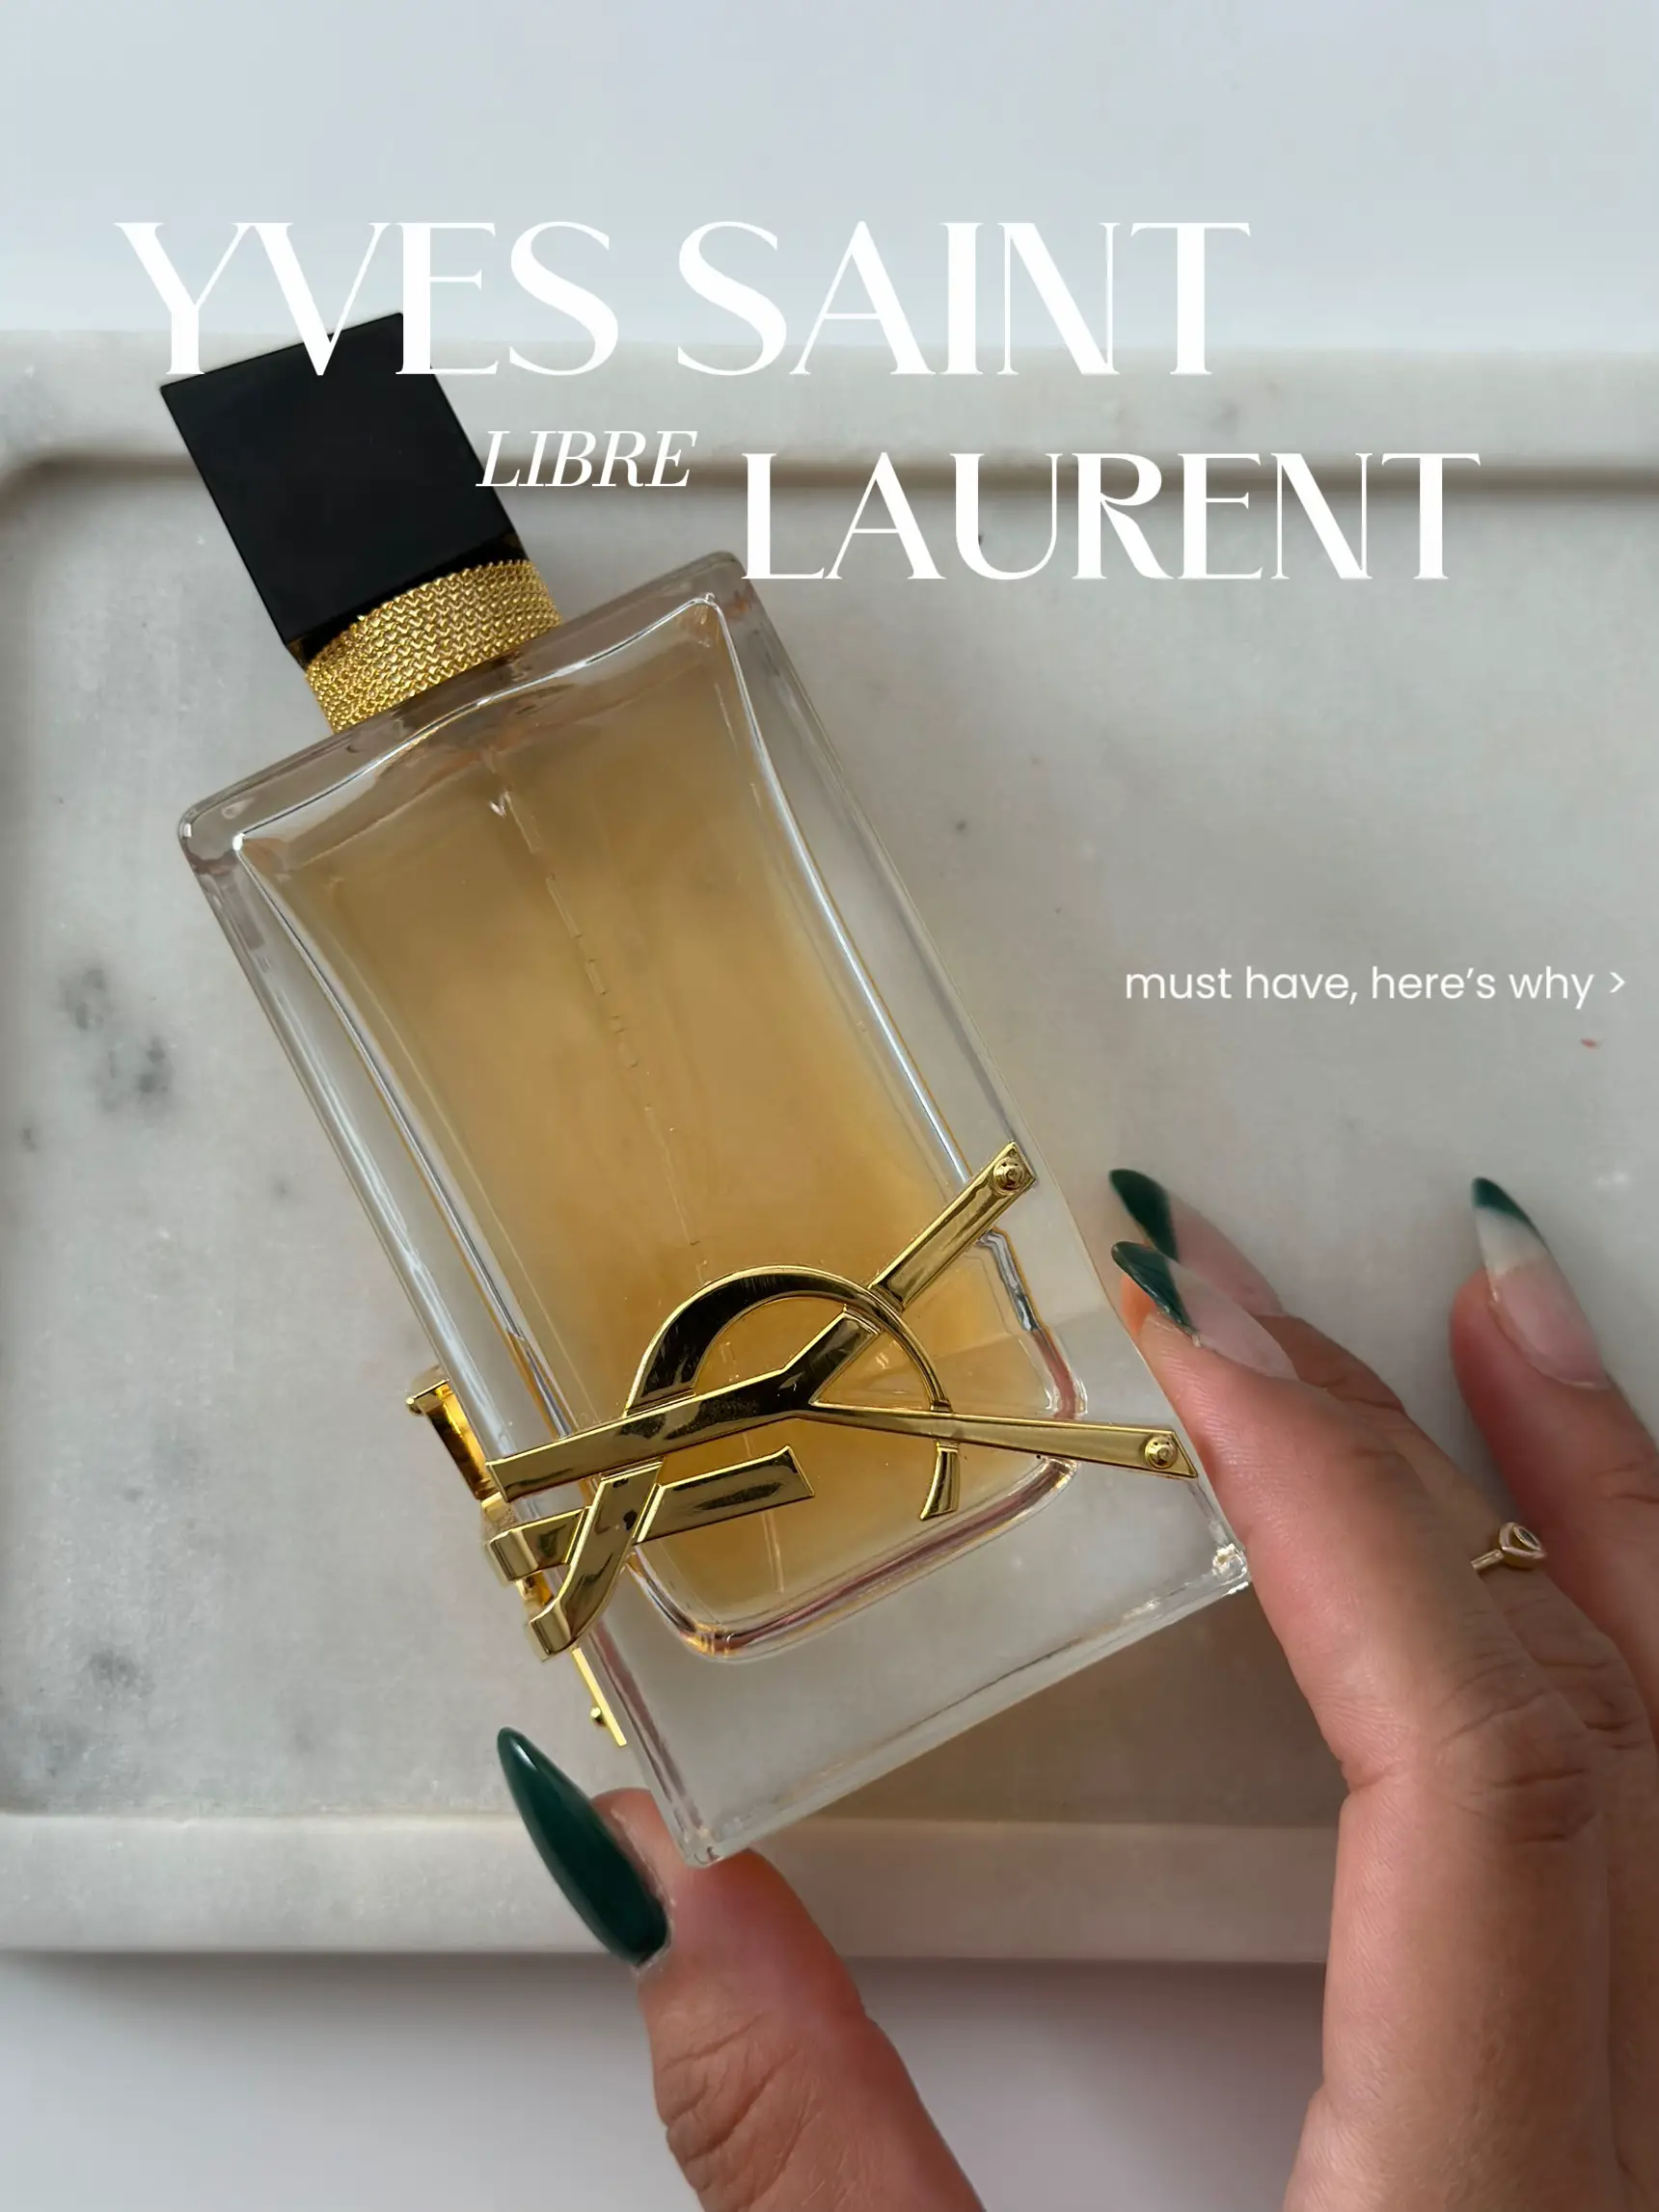 Fake vs Real Libre Yves Saint Laurent 90 ML Eau De Parfum 